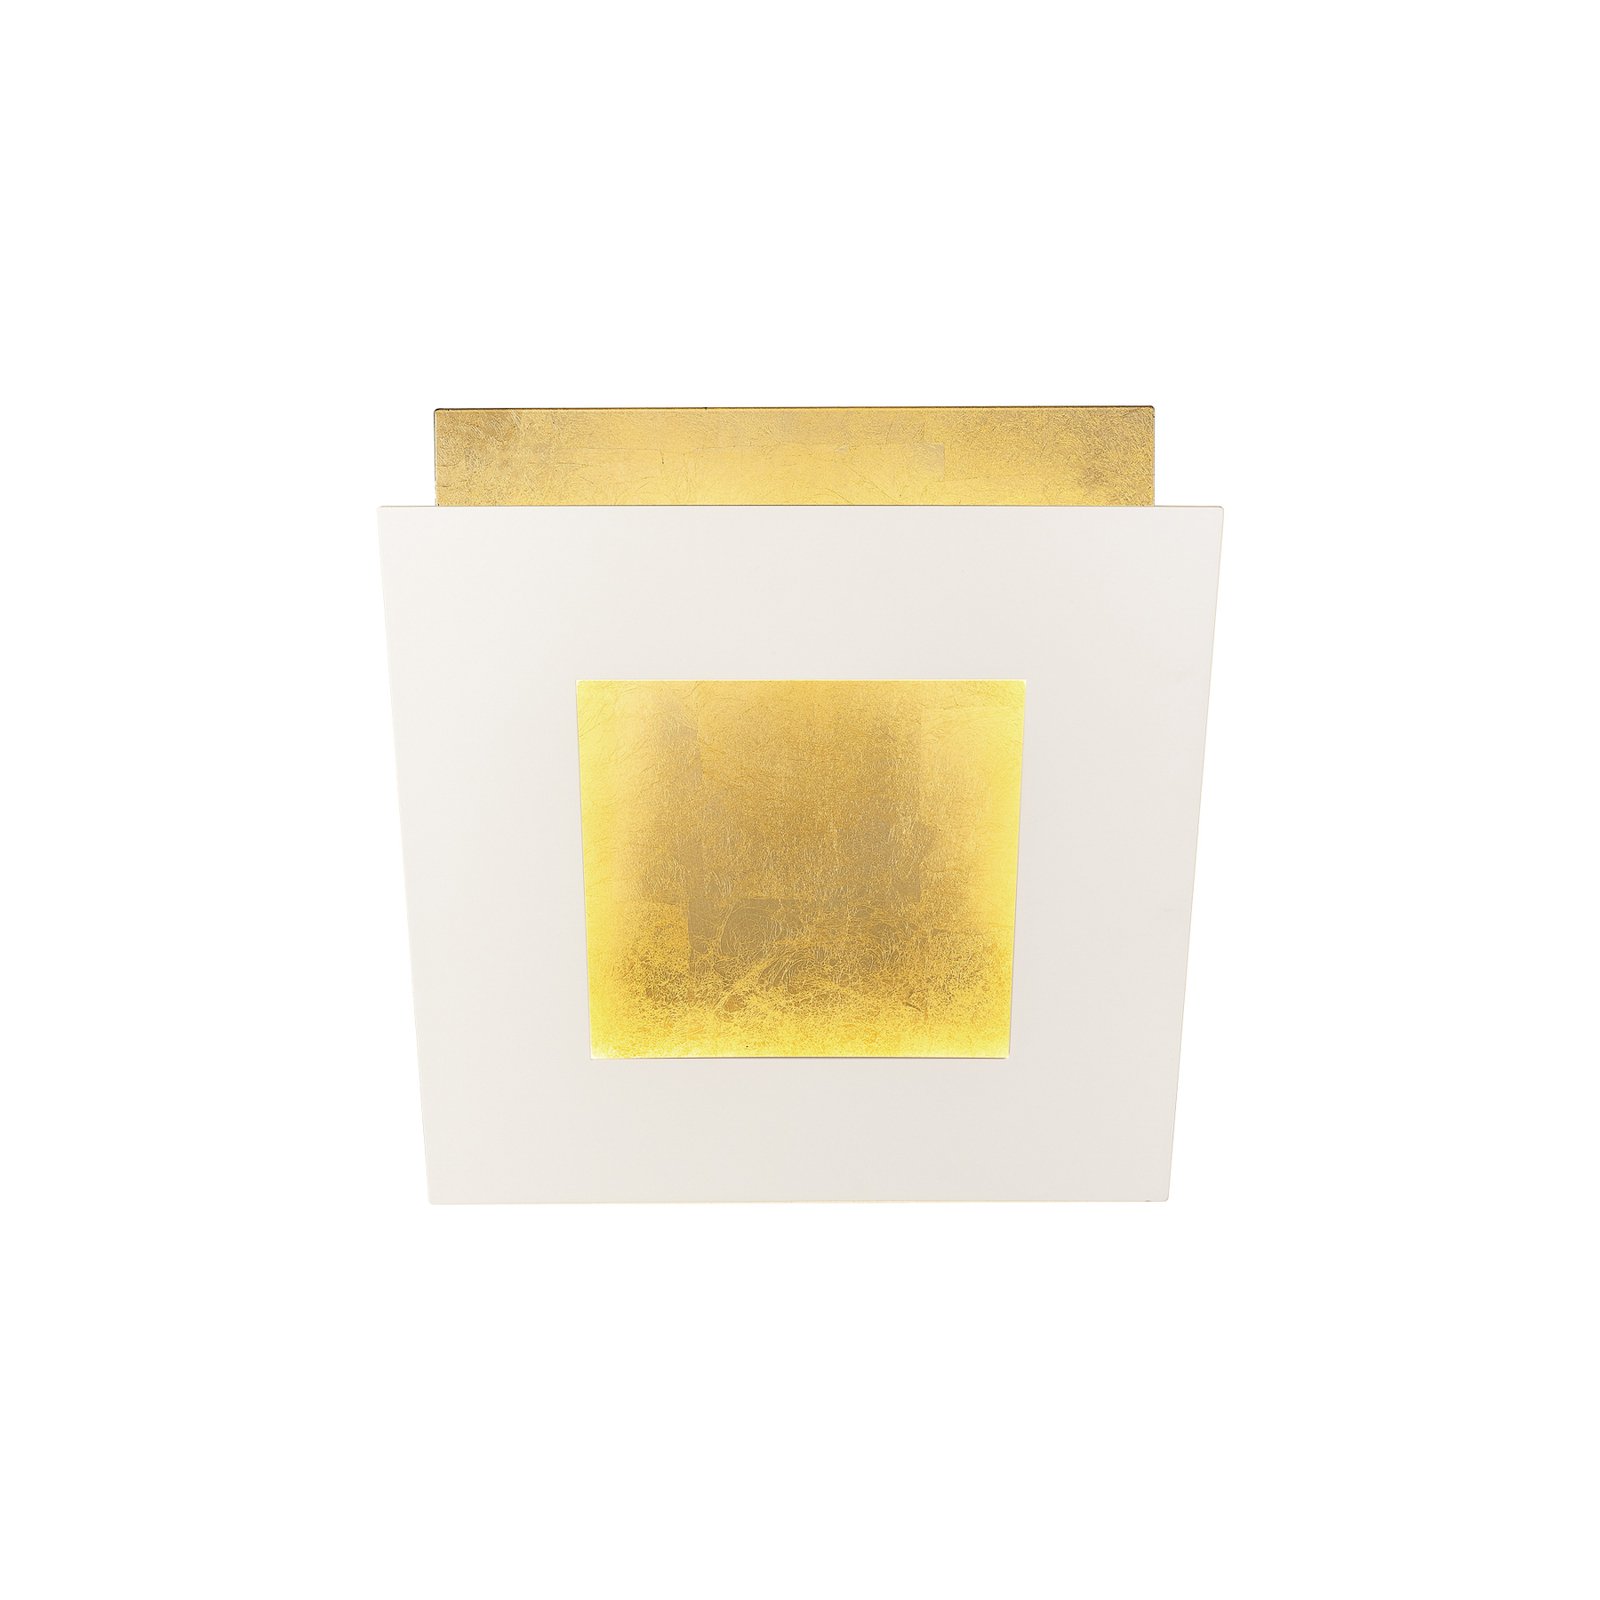 LED-vägglampa Dalia, vit/guld, 18 x 18 cm, aluminium